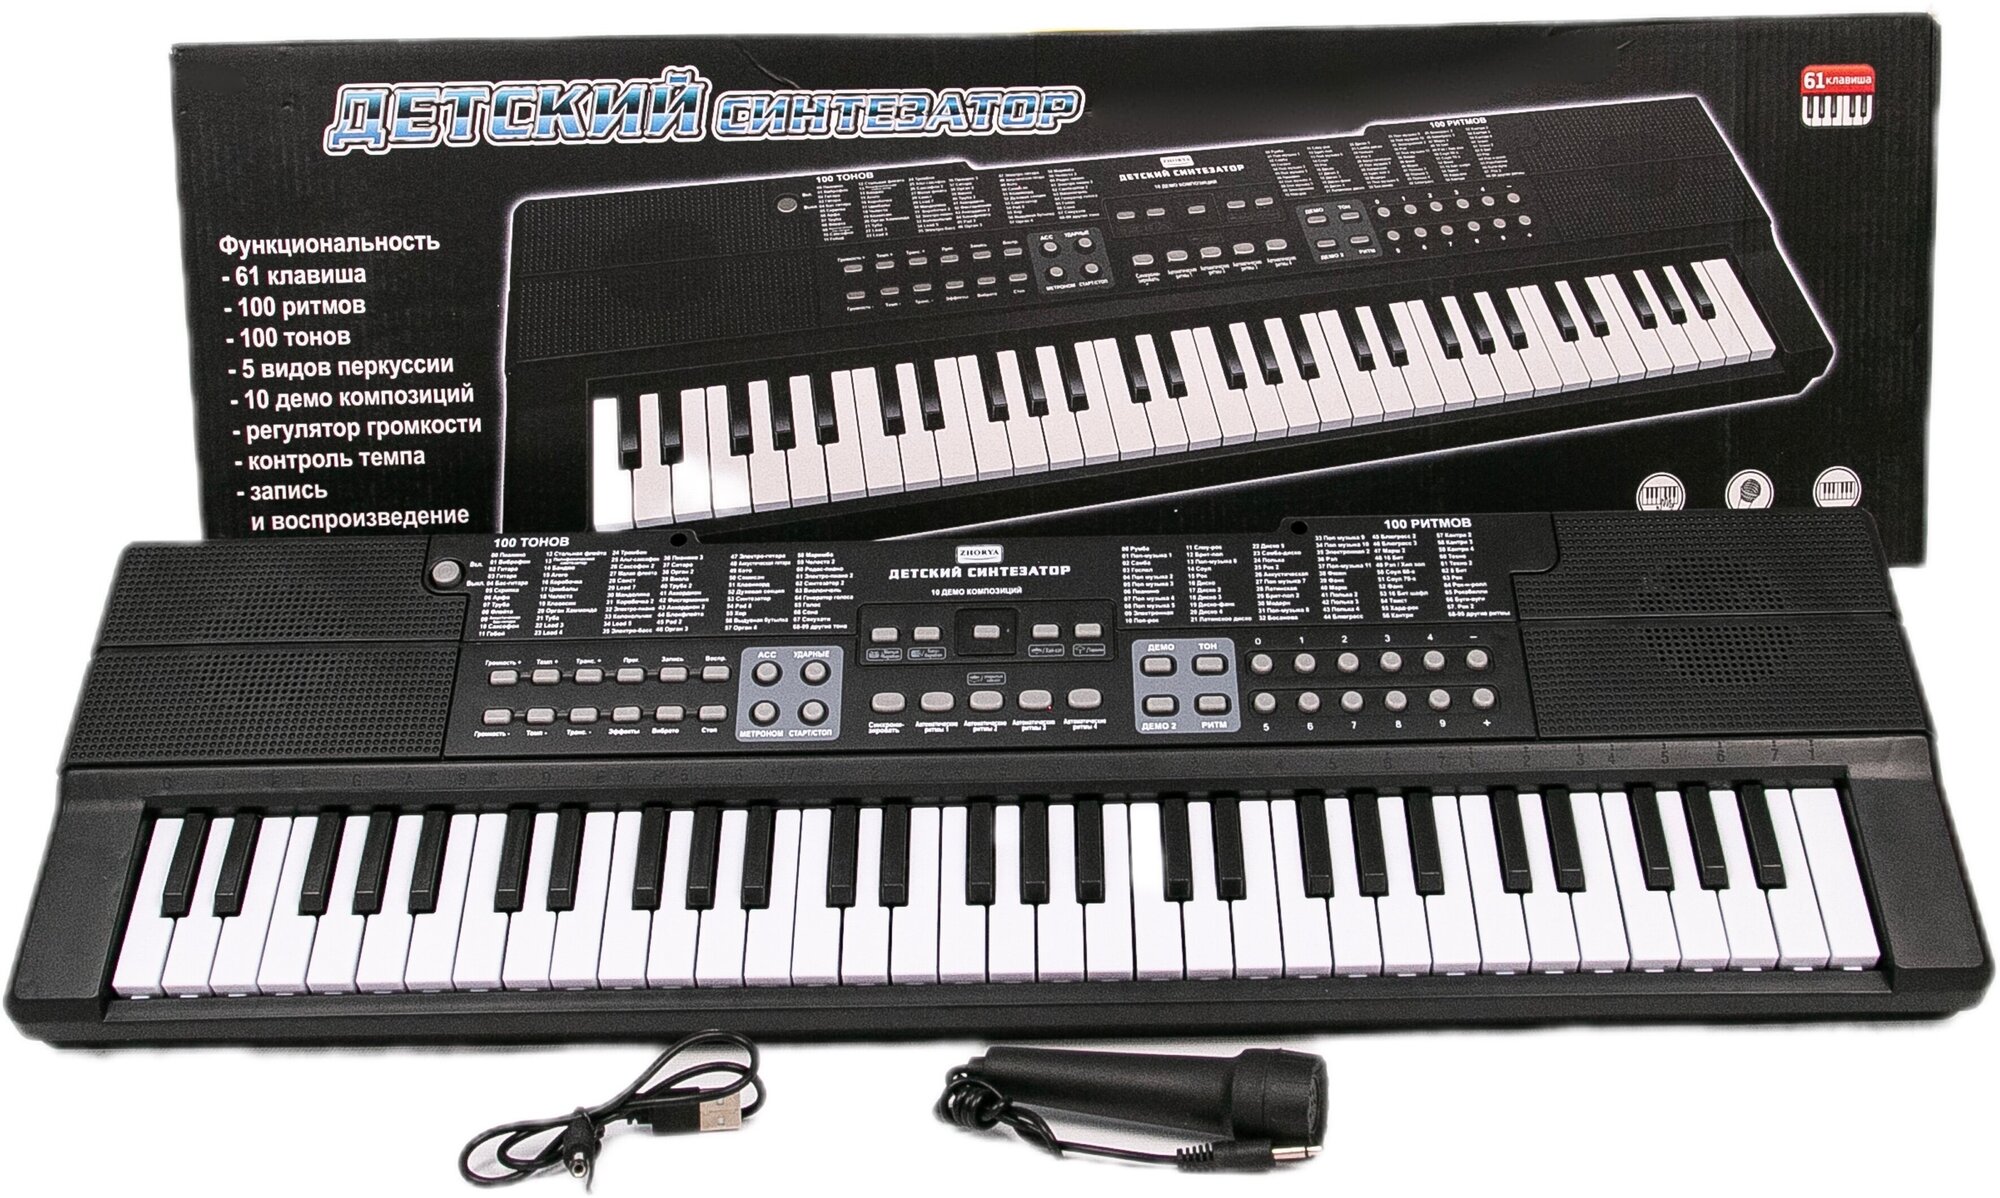 Детский музыкальный синтезатор 65 х 19 см с микрофоном, от сети или от батареек, 61 клавиша, регулятор громкости и темпа, 100 тонов и ритмов